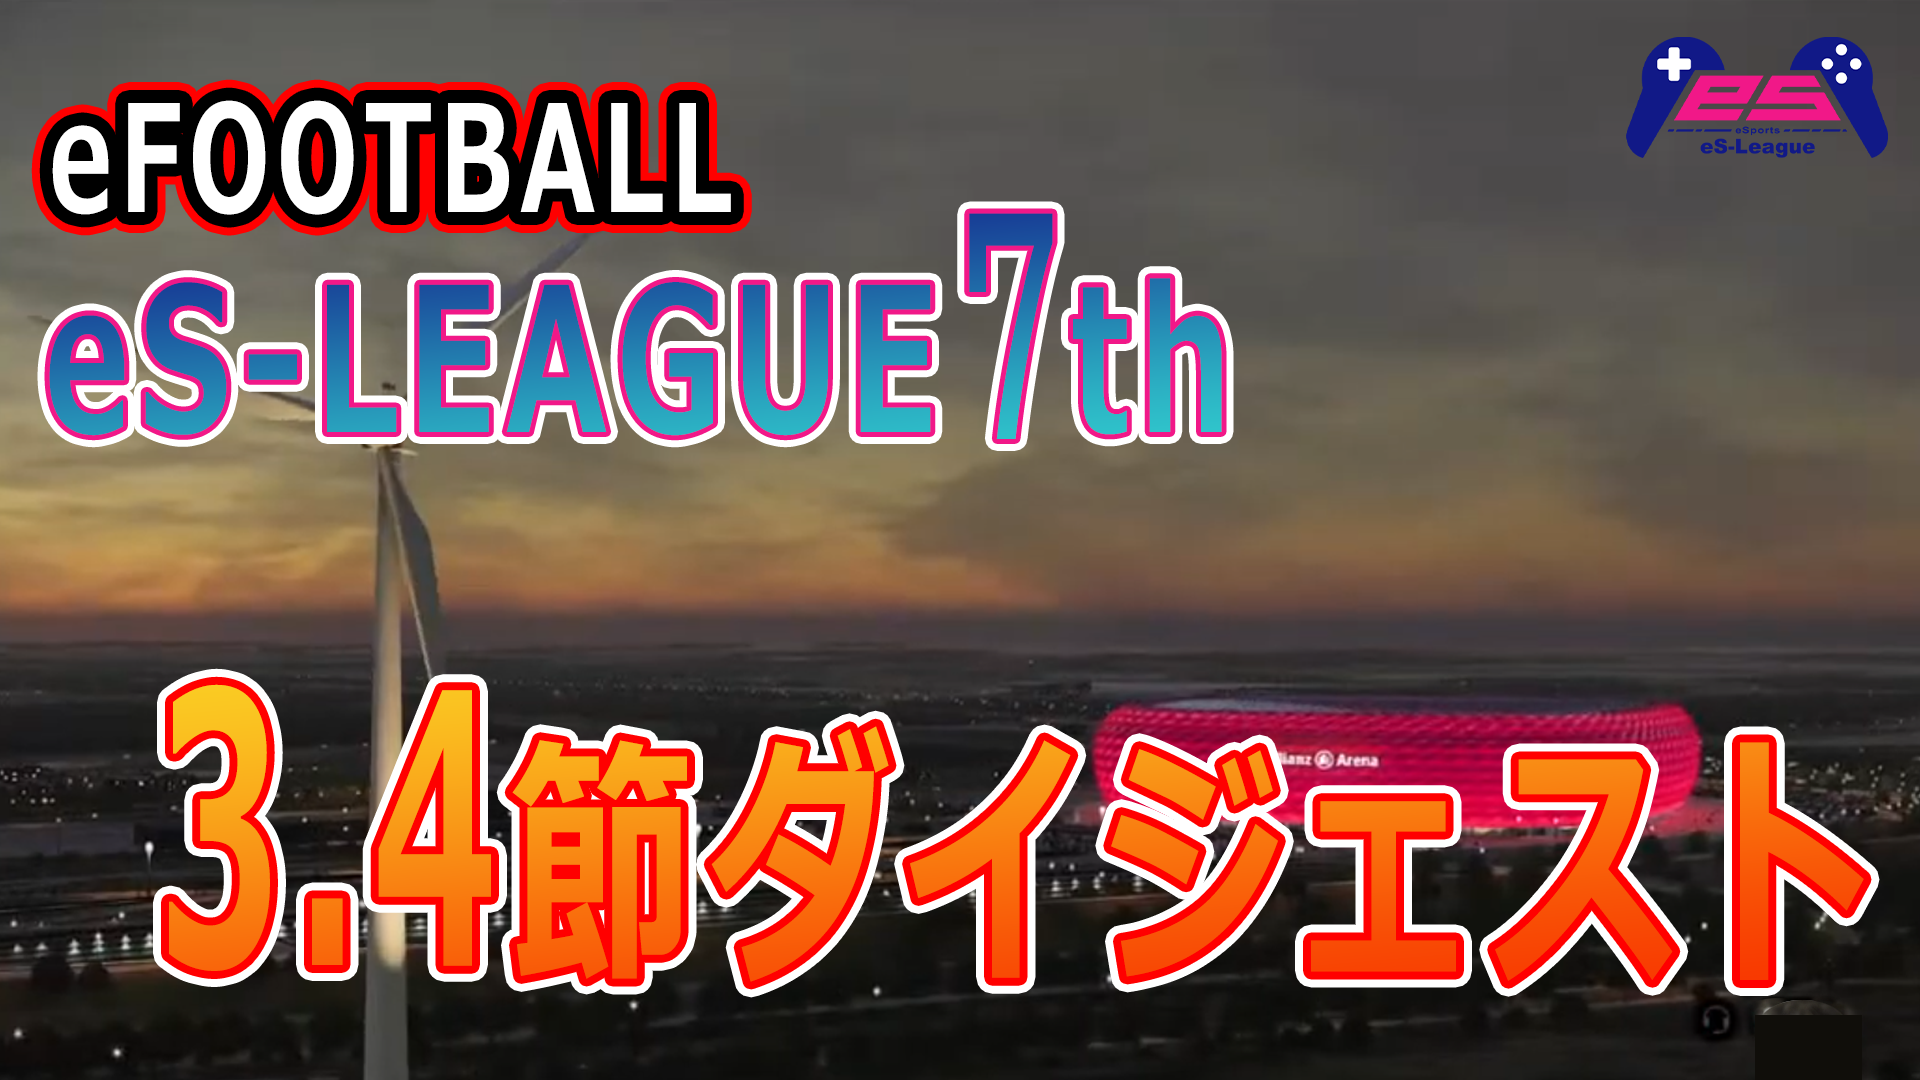 eFOOTBALL eS-LEAGUE 7th 3.4節 ダイジェスト